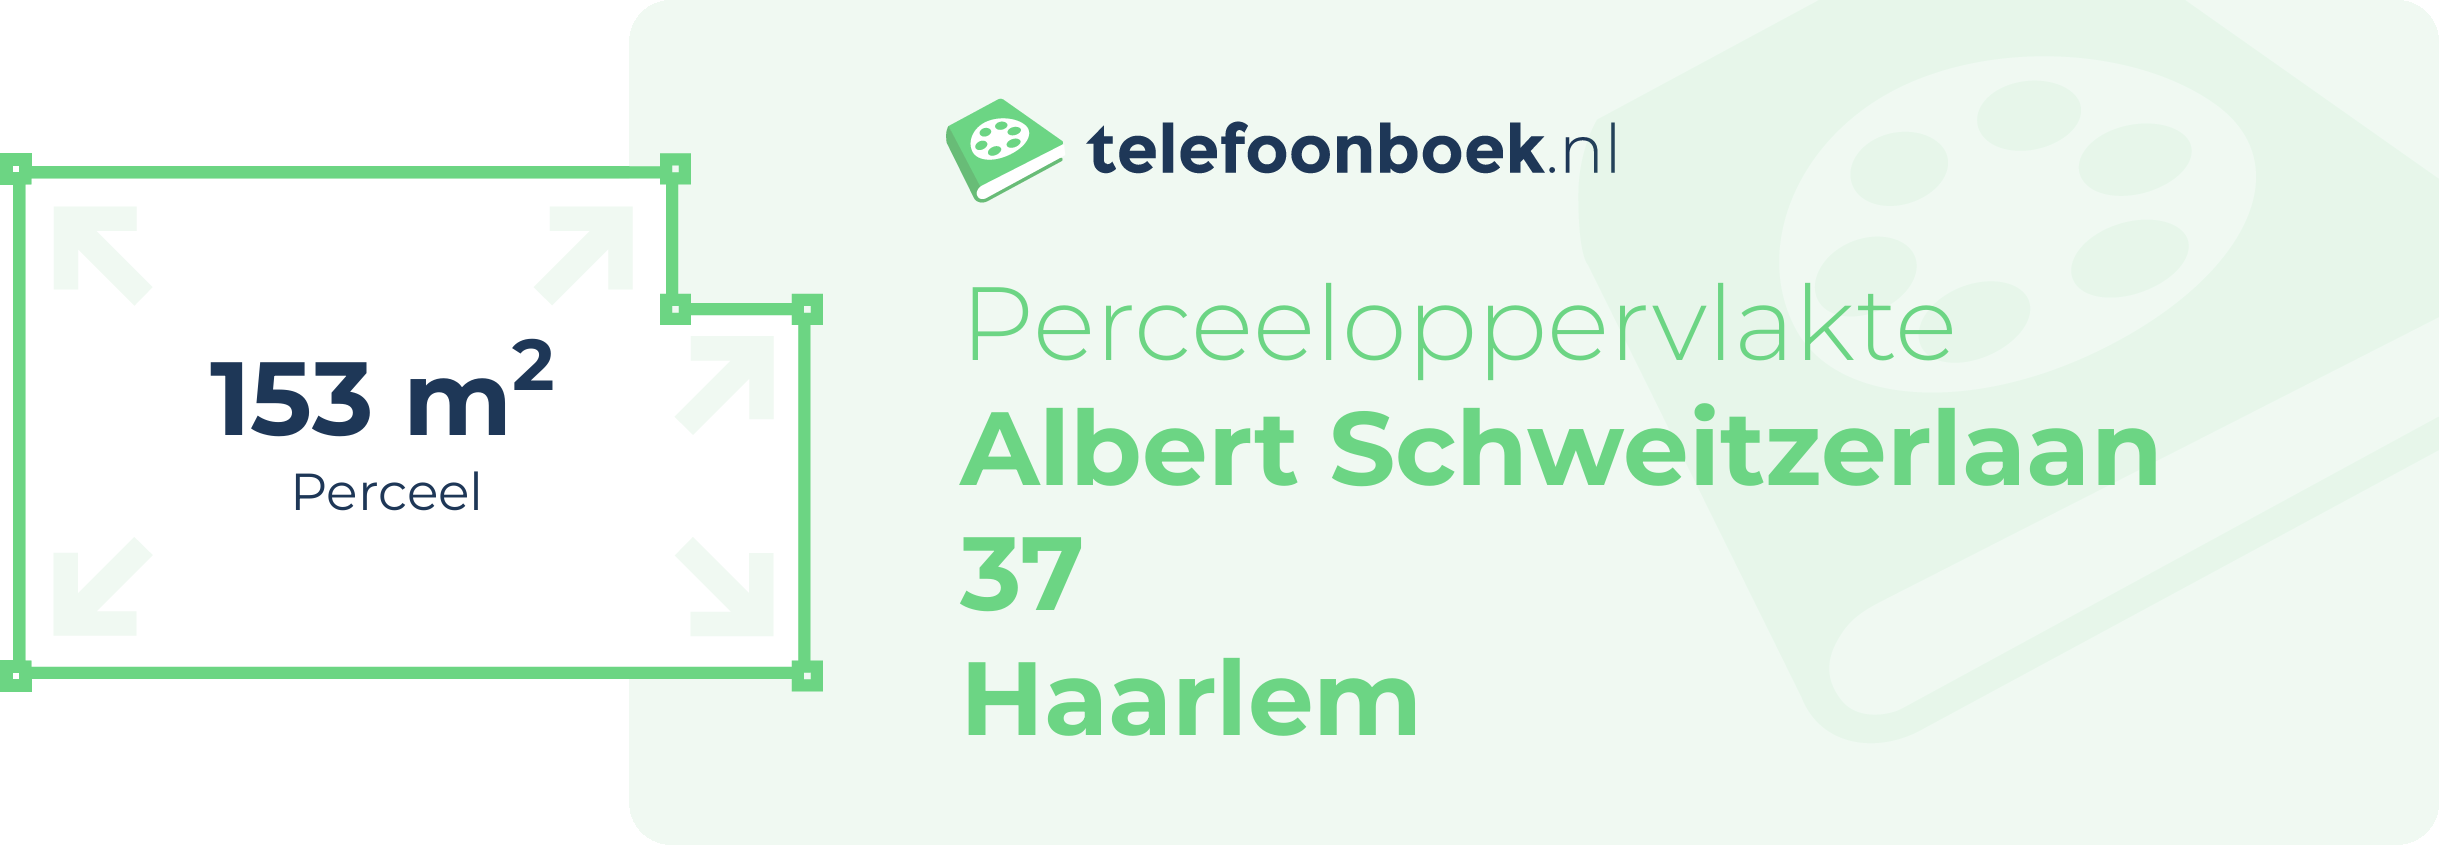 Perceeloppervlakte Albert Schweitzerlaan 37 Haarlem